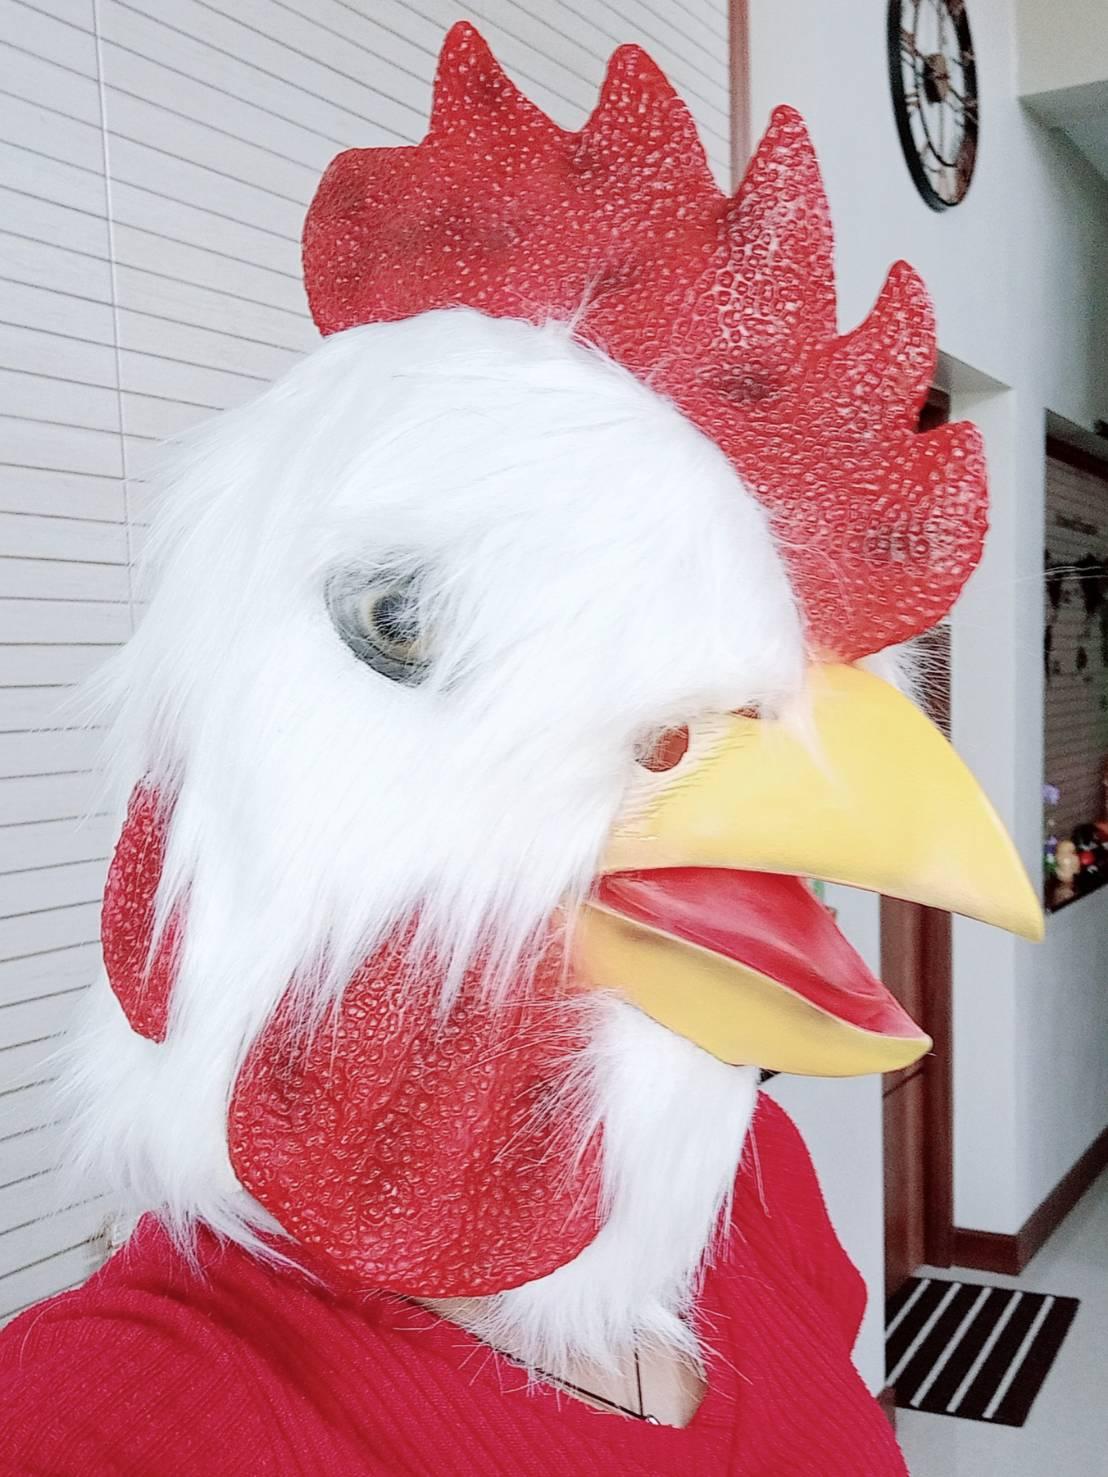 1 อัน 3D ติดขน เสมือนจริง หน้ากากหัวไก่ หน้ากากไก่ หน้ากากหัวสัตว์ หน้ากากคอสเพล หน้ากากยาง หน้ากาก ไก่ สัตว์ ของแปลก หายาก ของสะสม หน้ากากแฟนซี หน้ากากฮาโลวีน chicken head mask halloween m24 shop